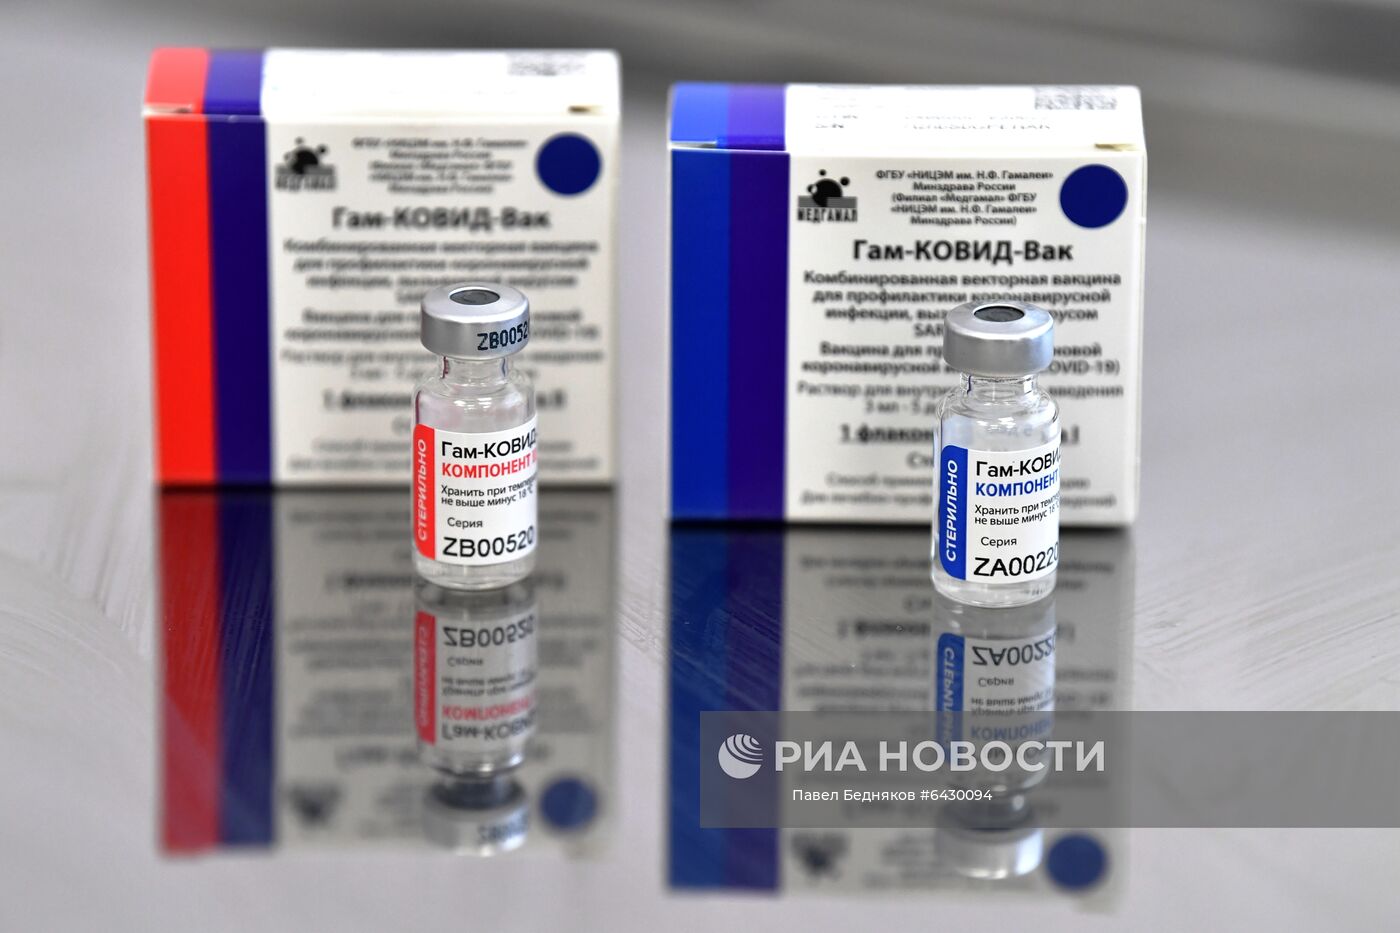 В Москве началась вакцинация от COVID-19 для людей старше 60 лет